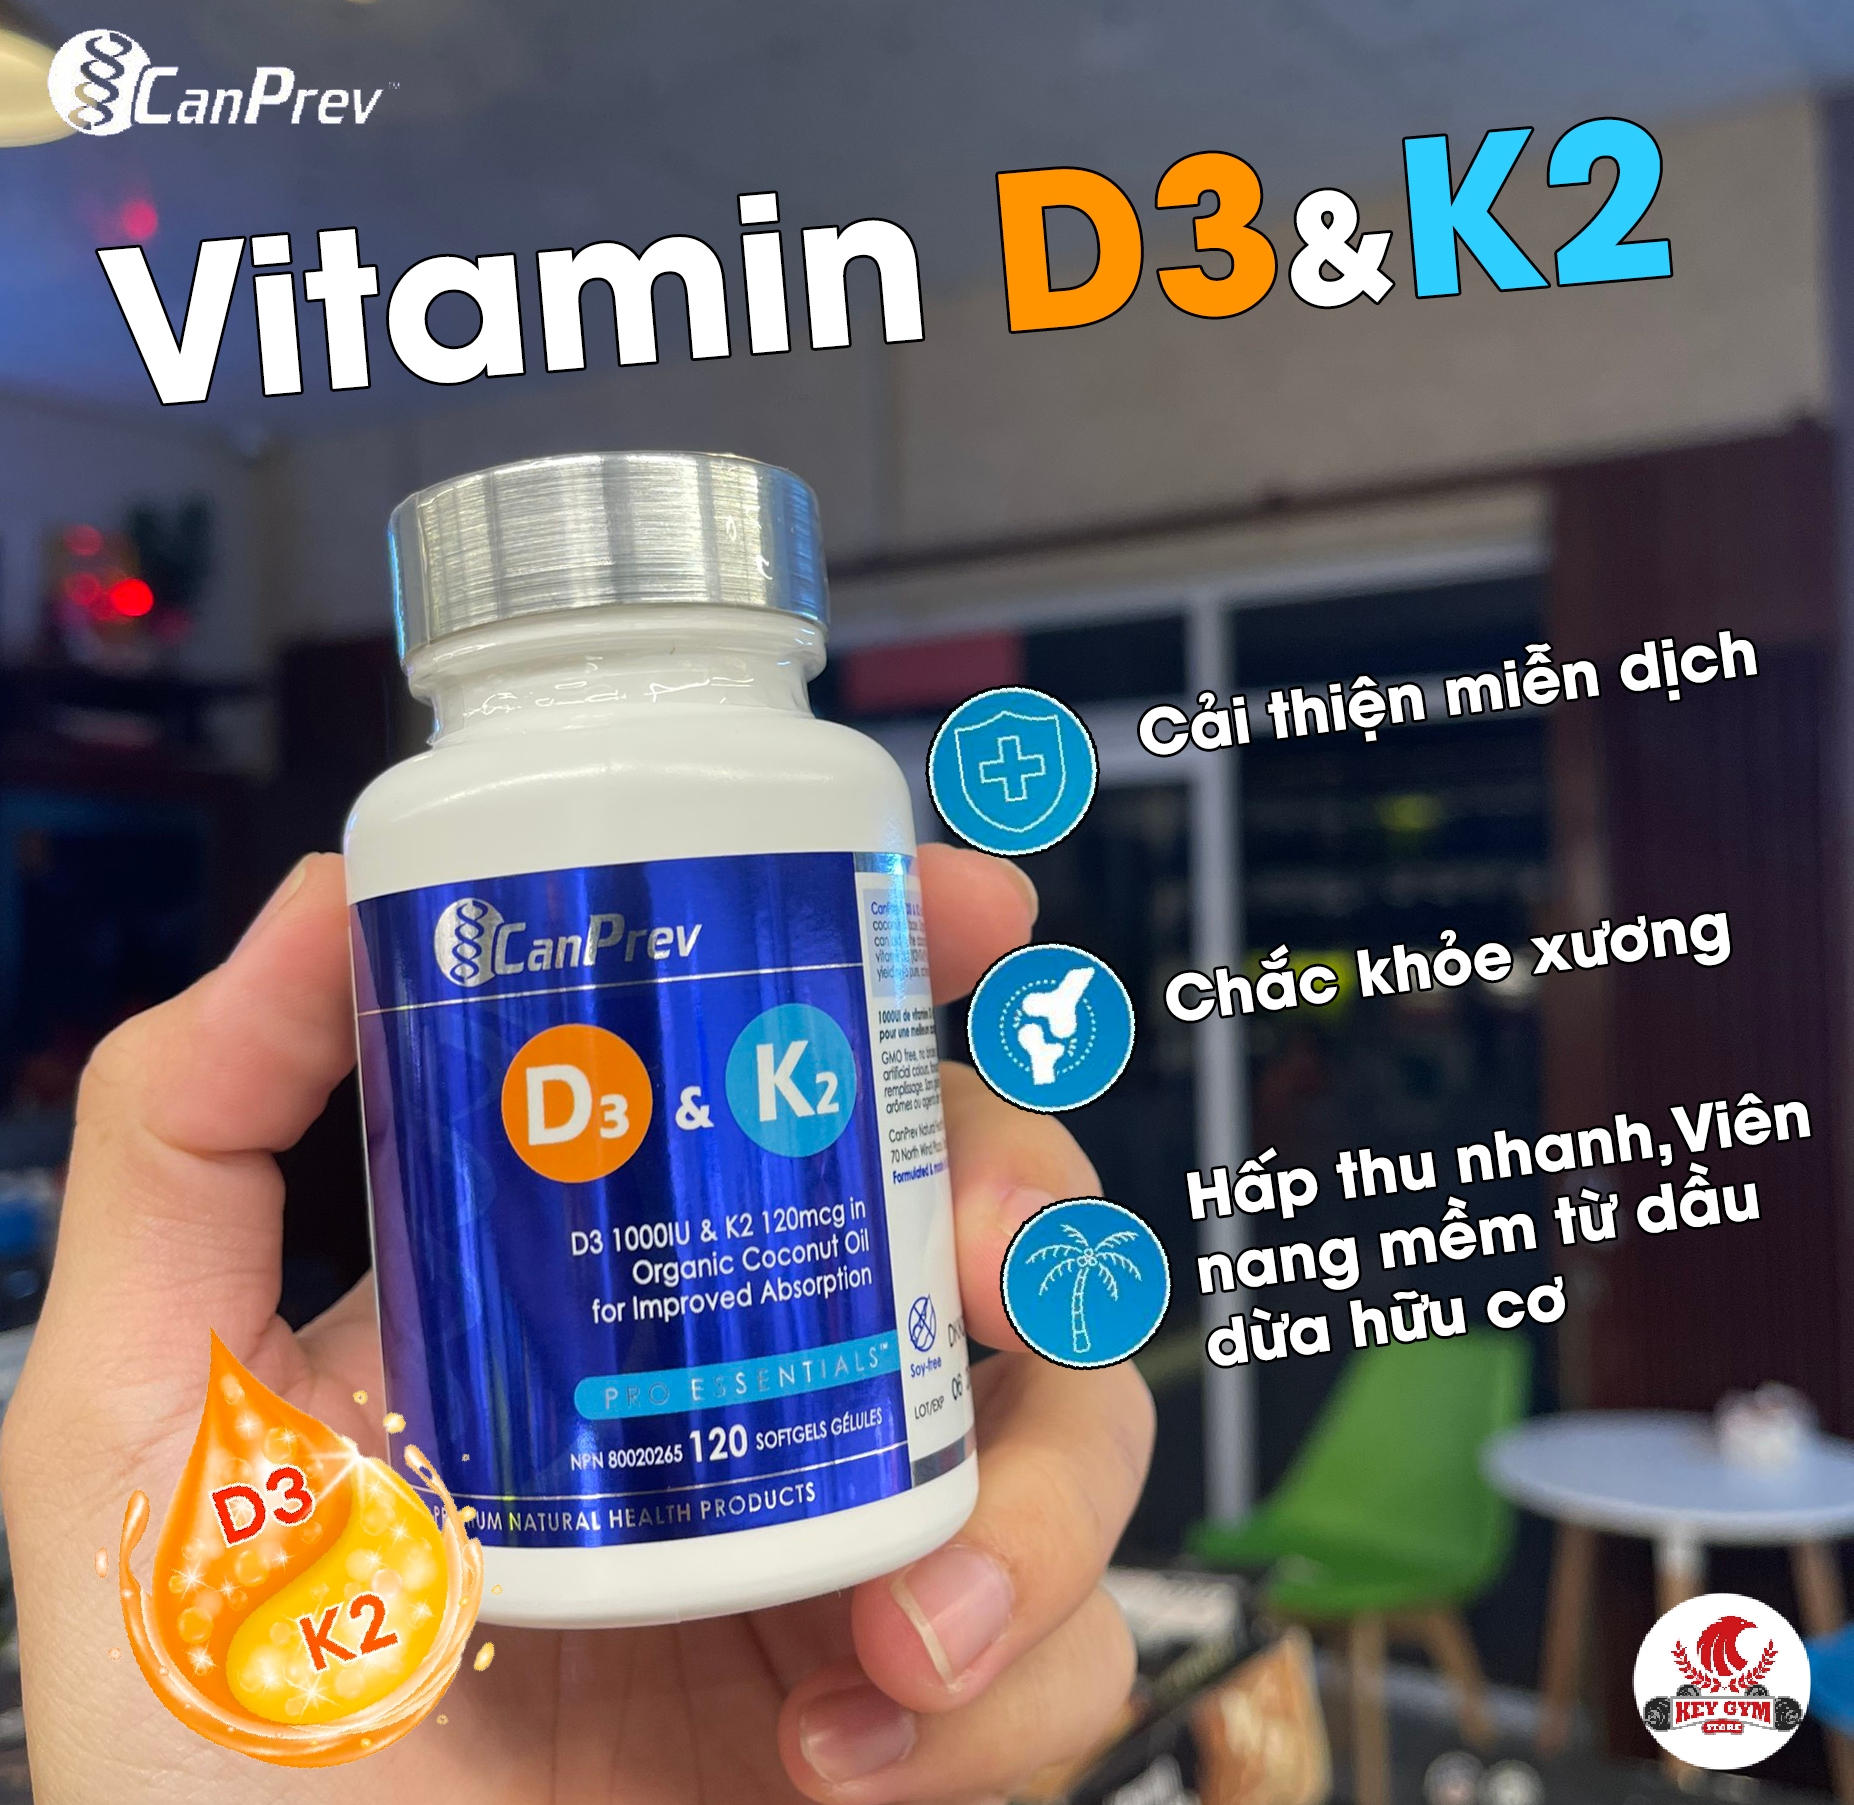 CanPrev Vitamin D3K2